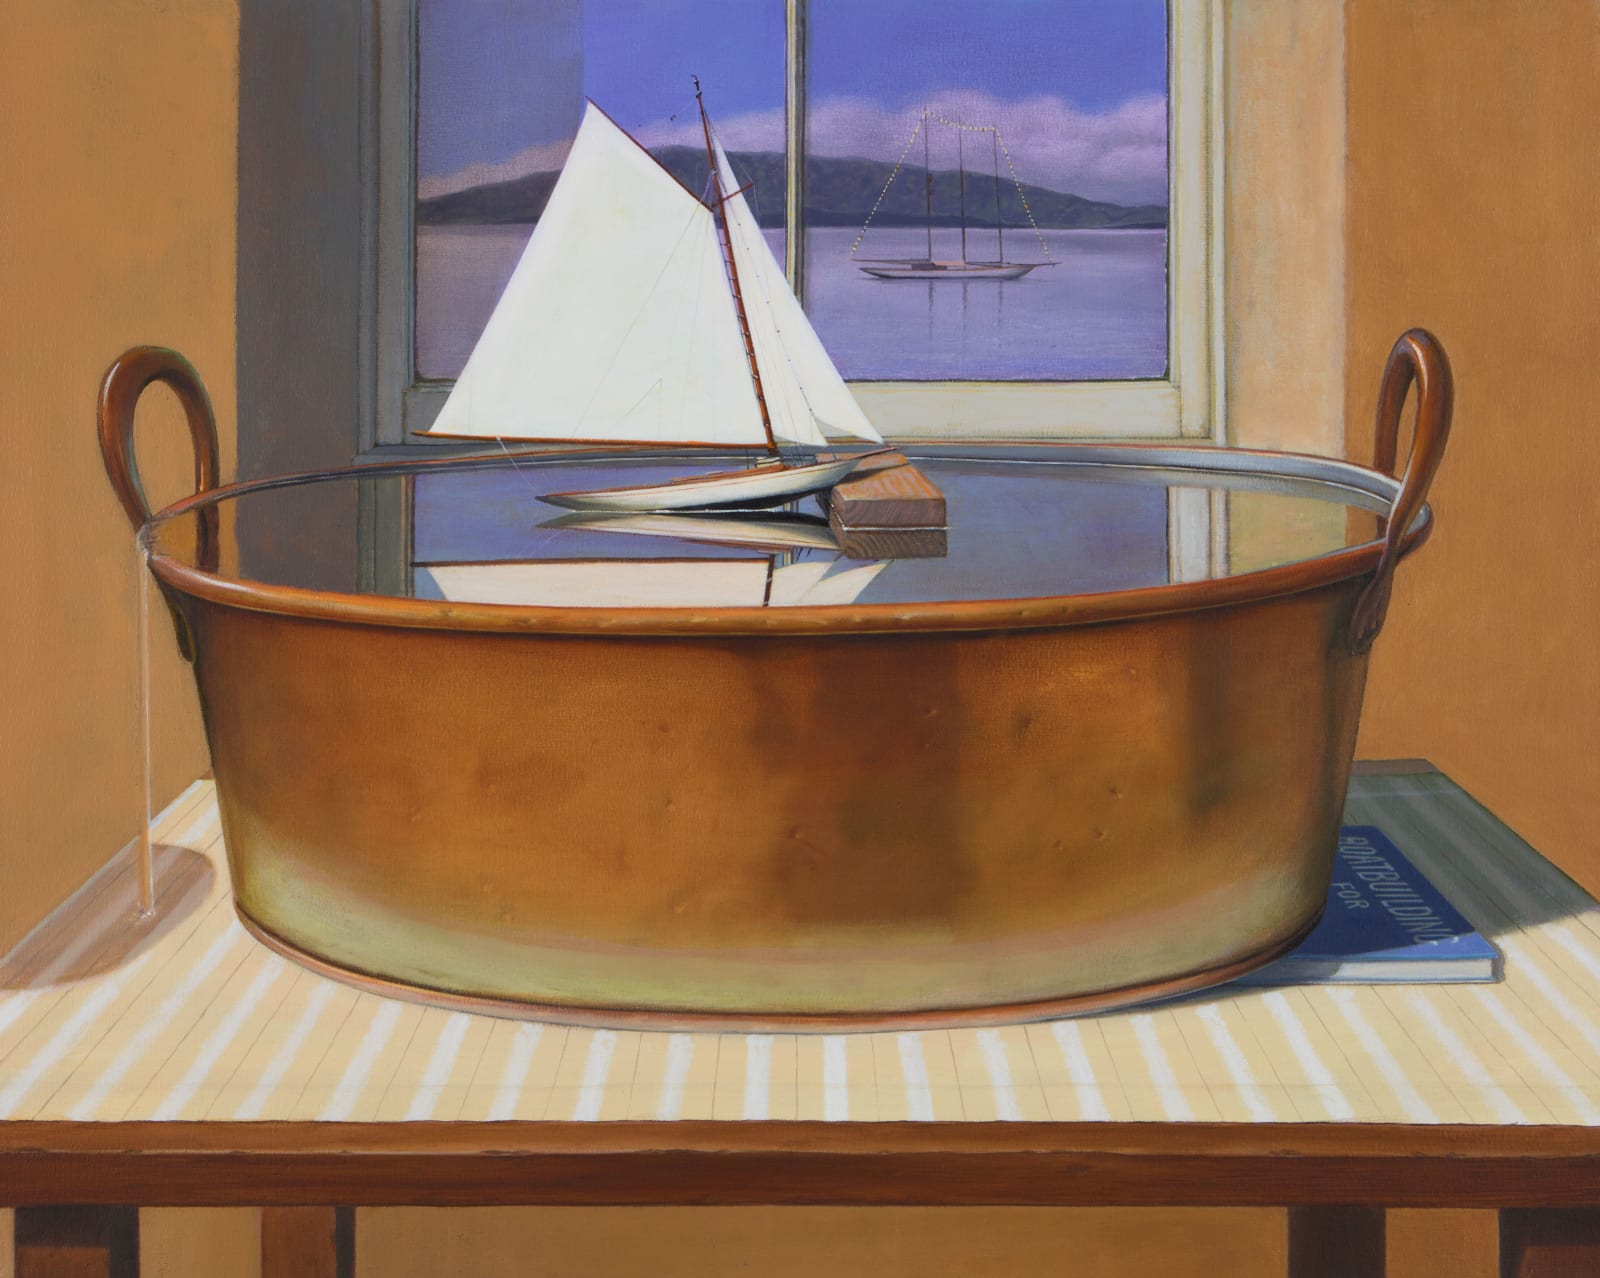 Gordon Mitchell, Boat Envy